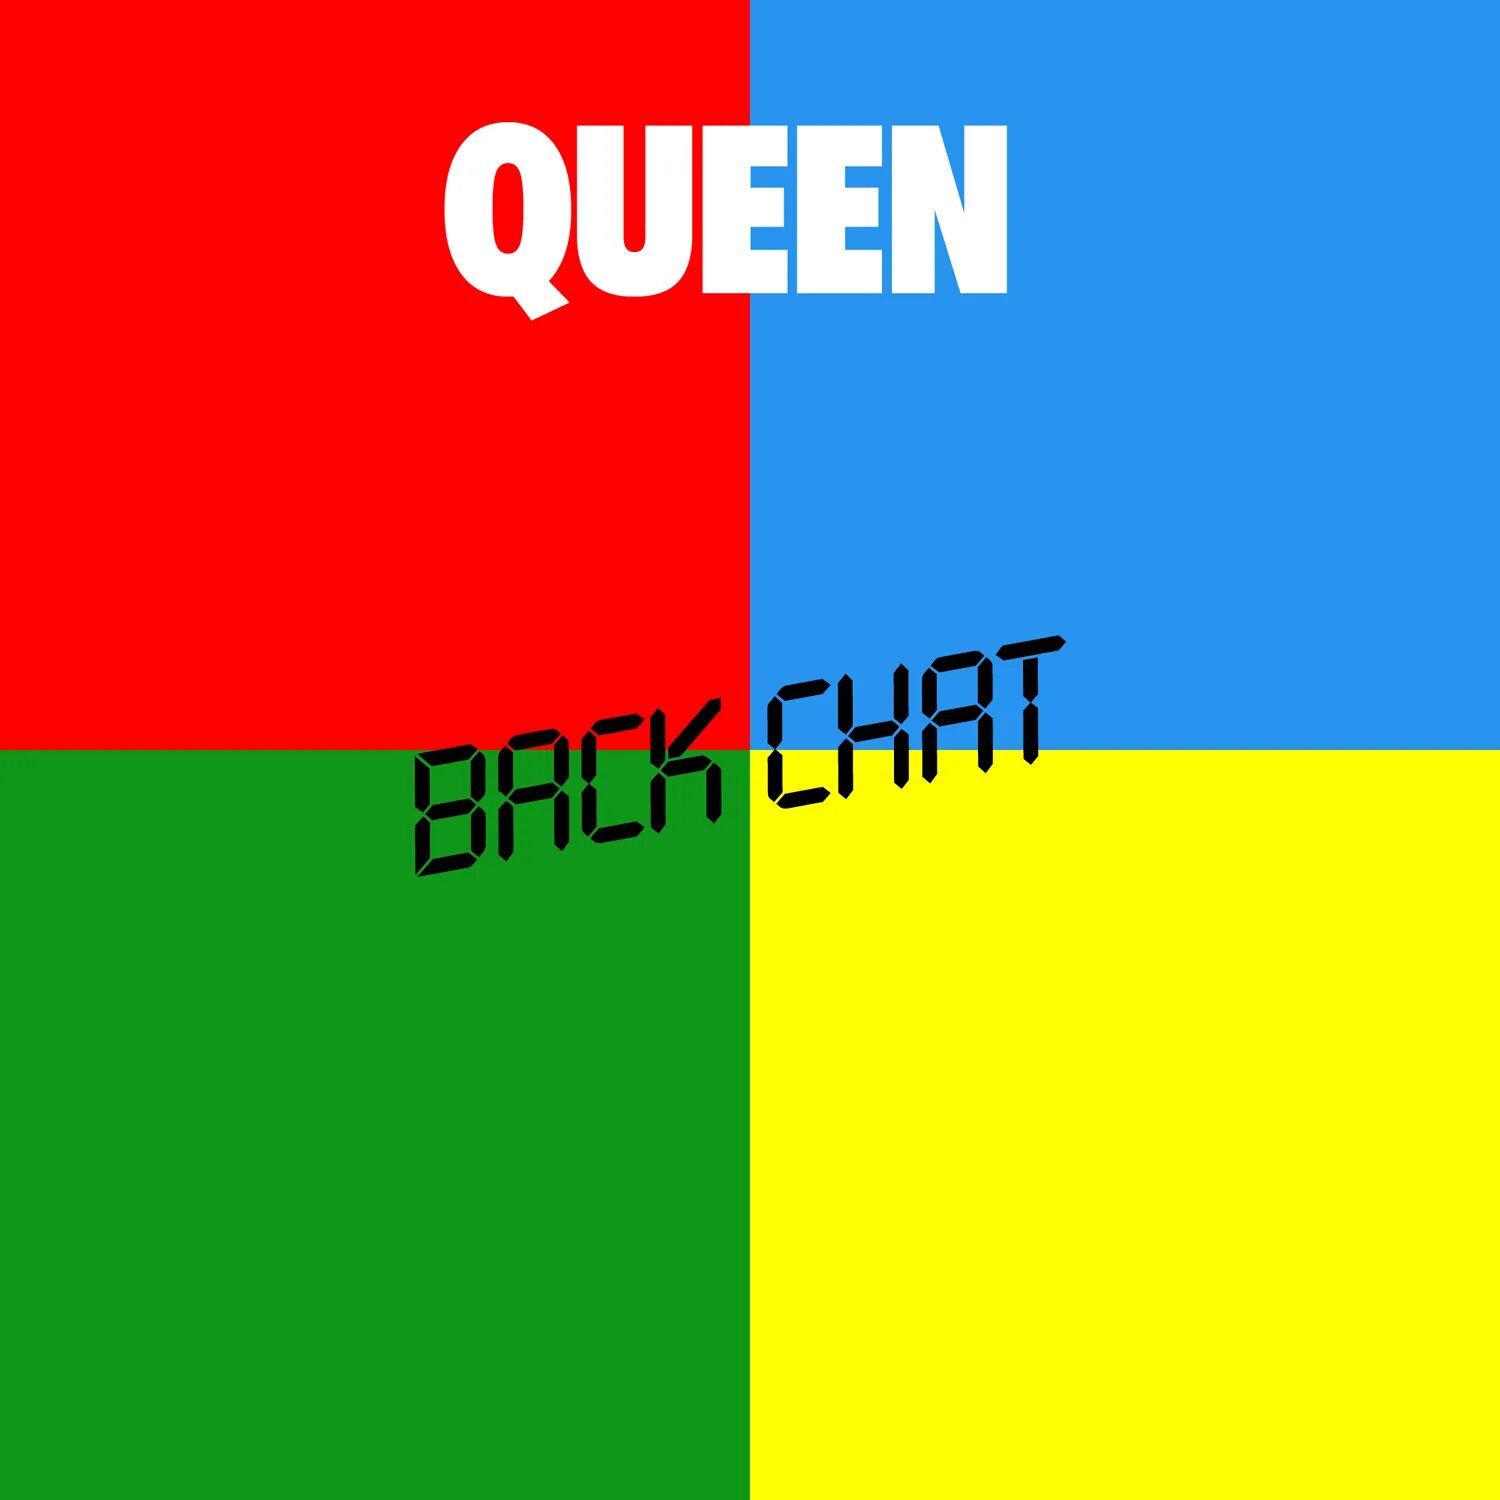 Queen back. Queen back chat. Queen Singles collection 1 Queen. Queen hot Space обложка. Альбом хот Спейс.